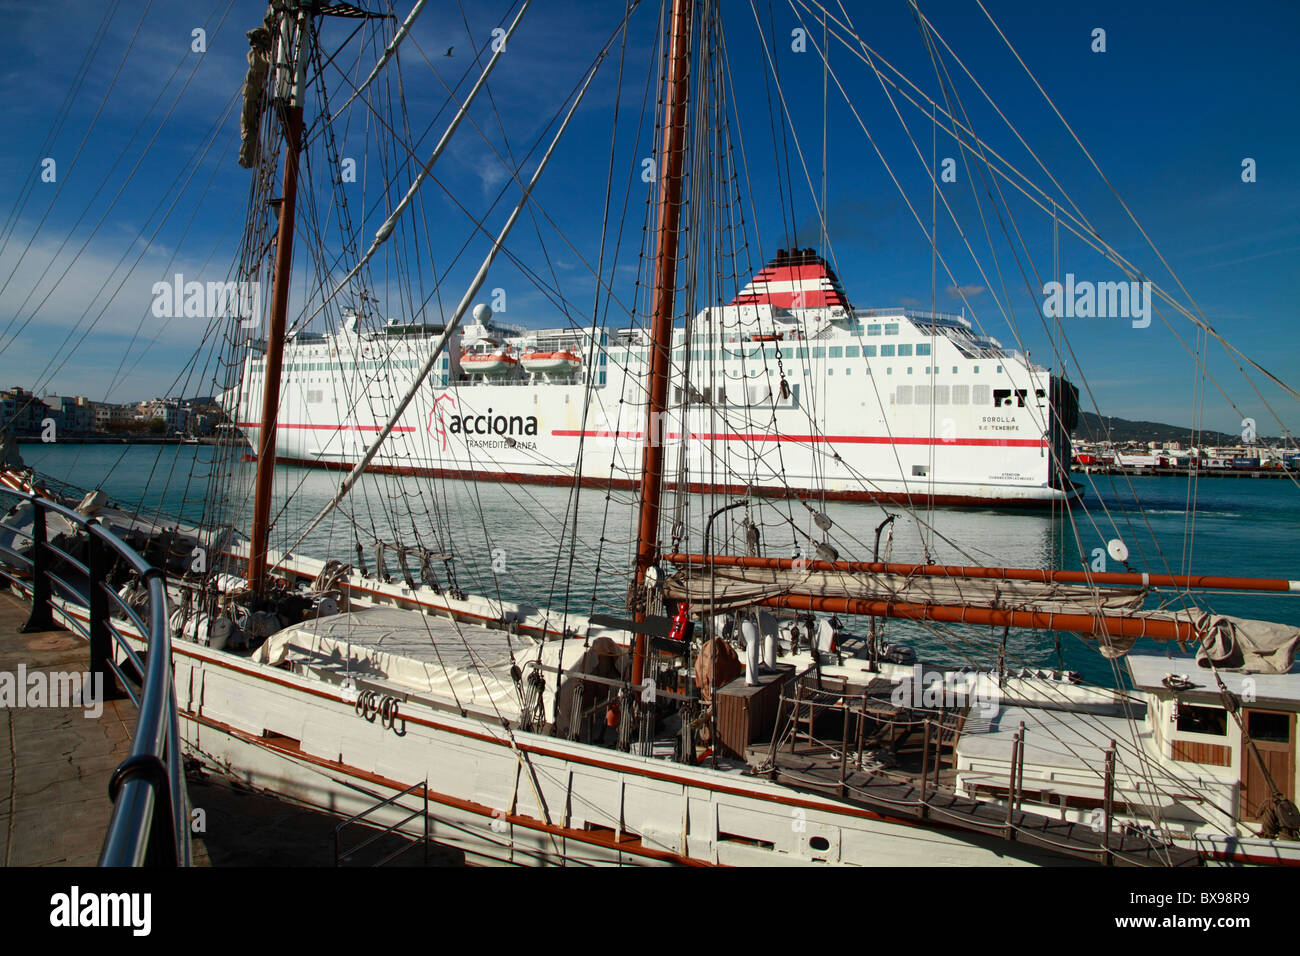 Moored schooner, liner in the background Stock Photo